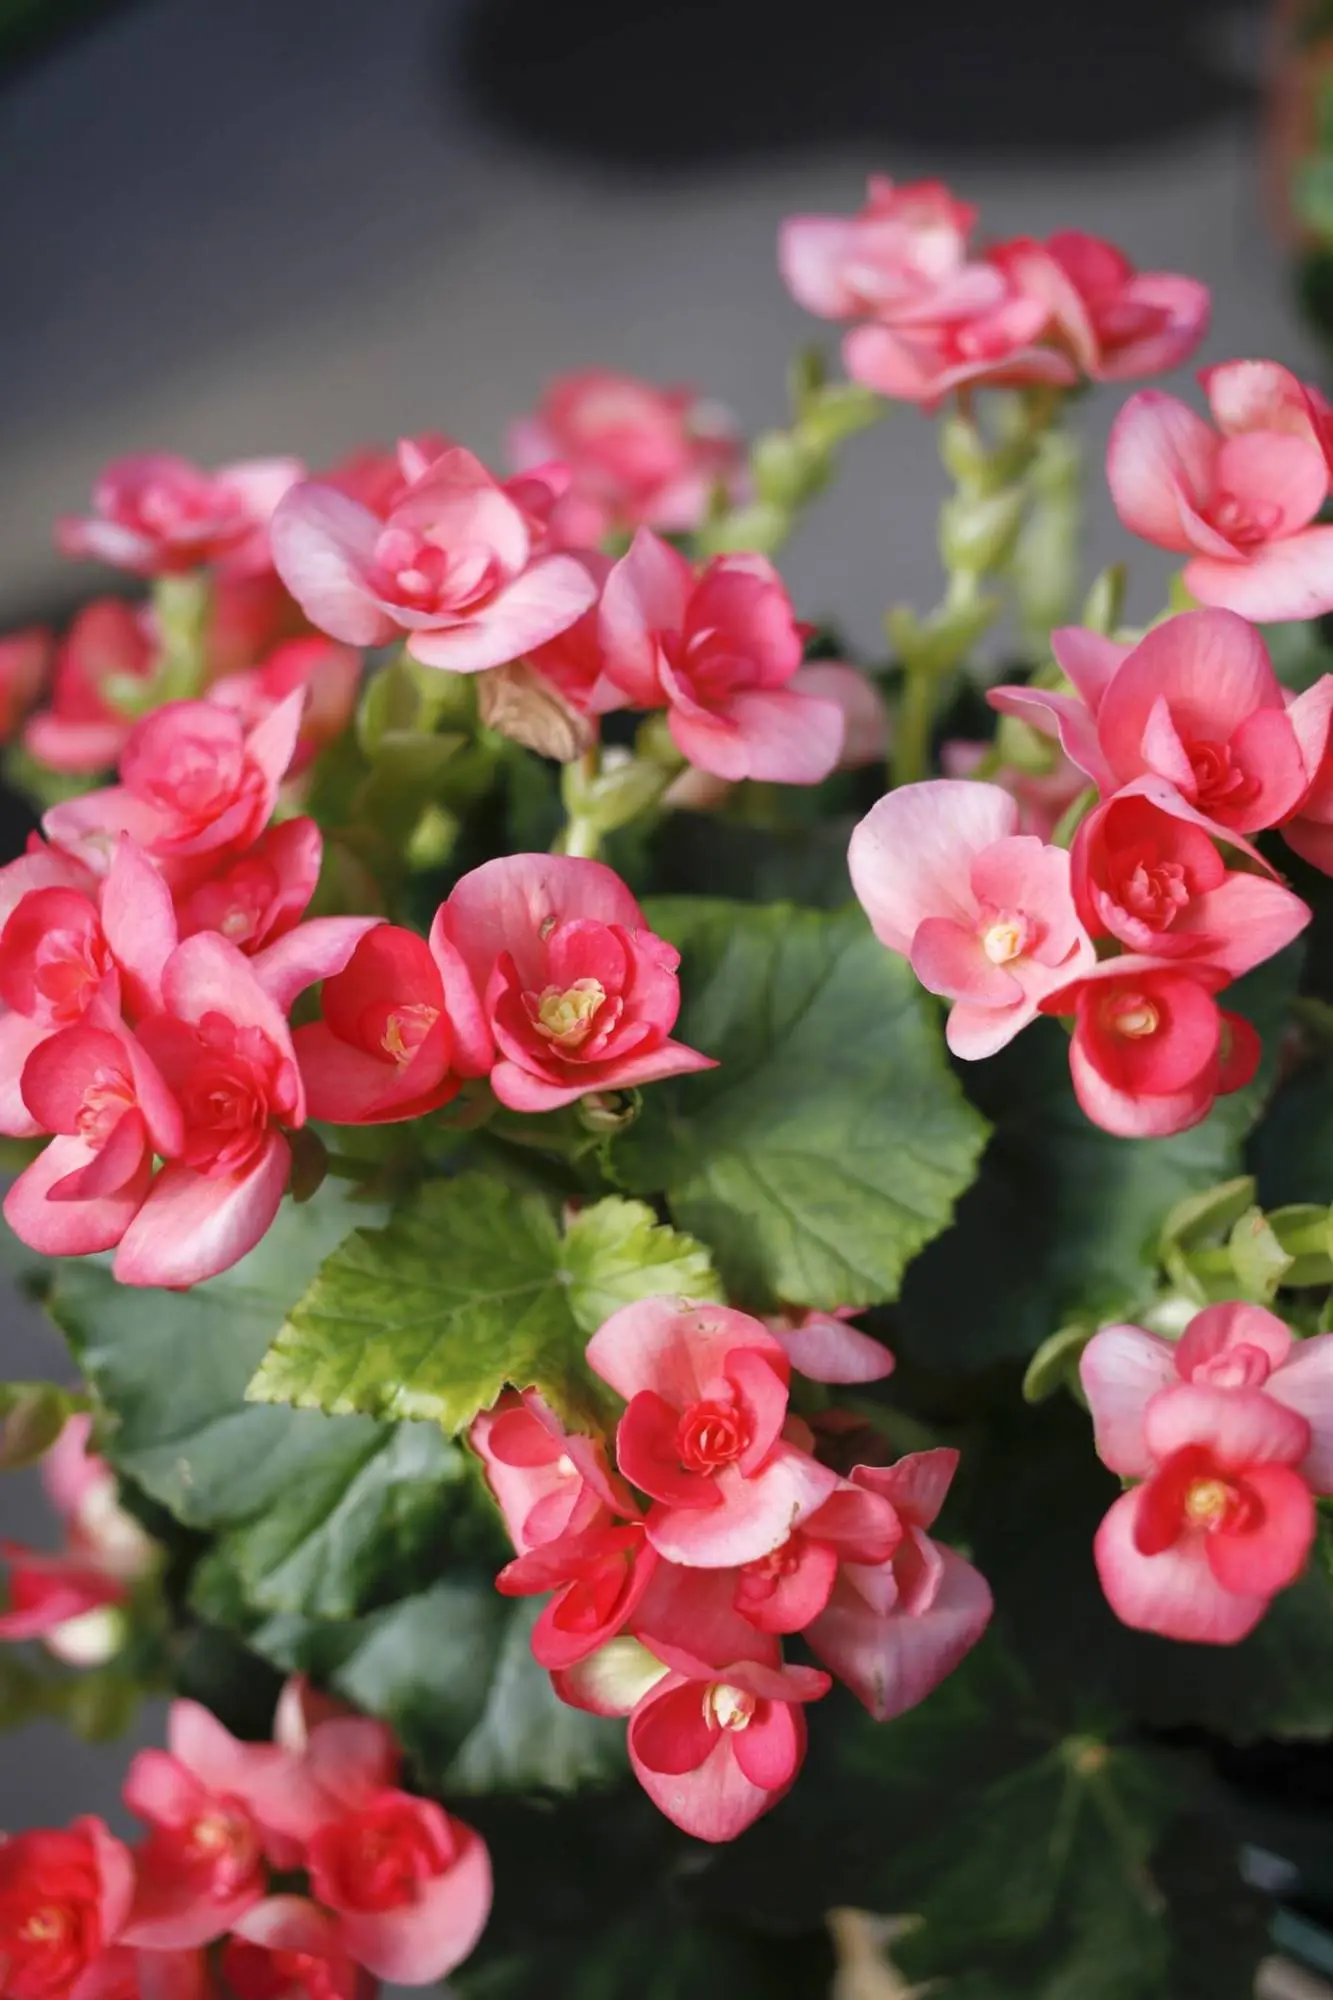 planta de interior con flores rosas - Cómo se llama la planta con flores rosadas